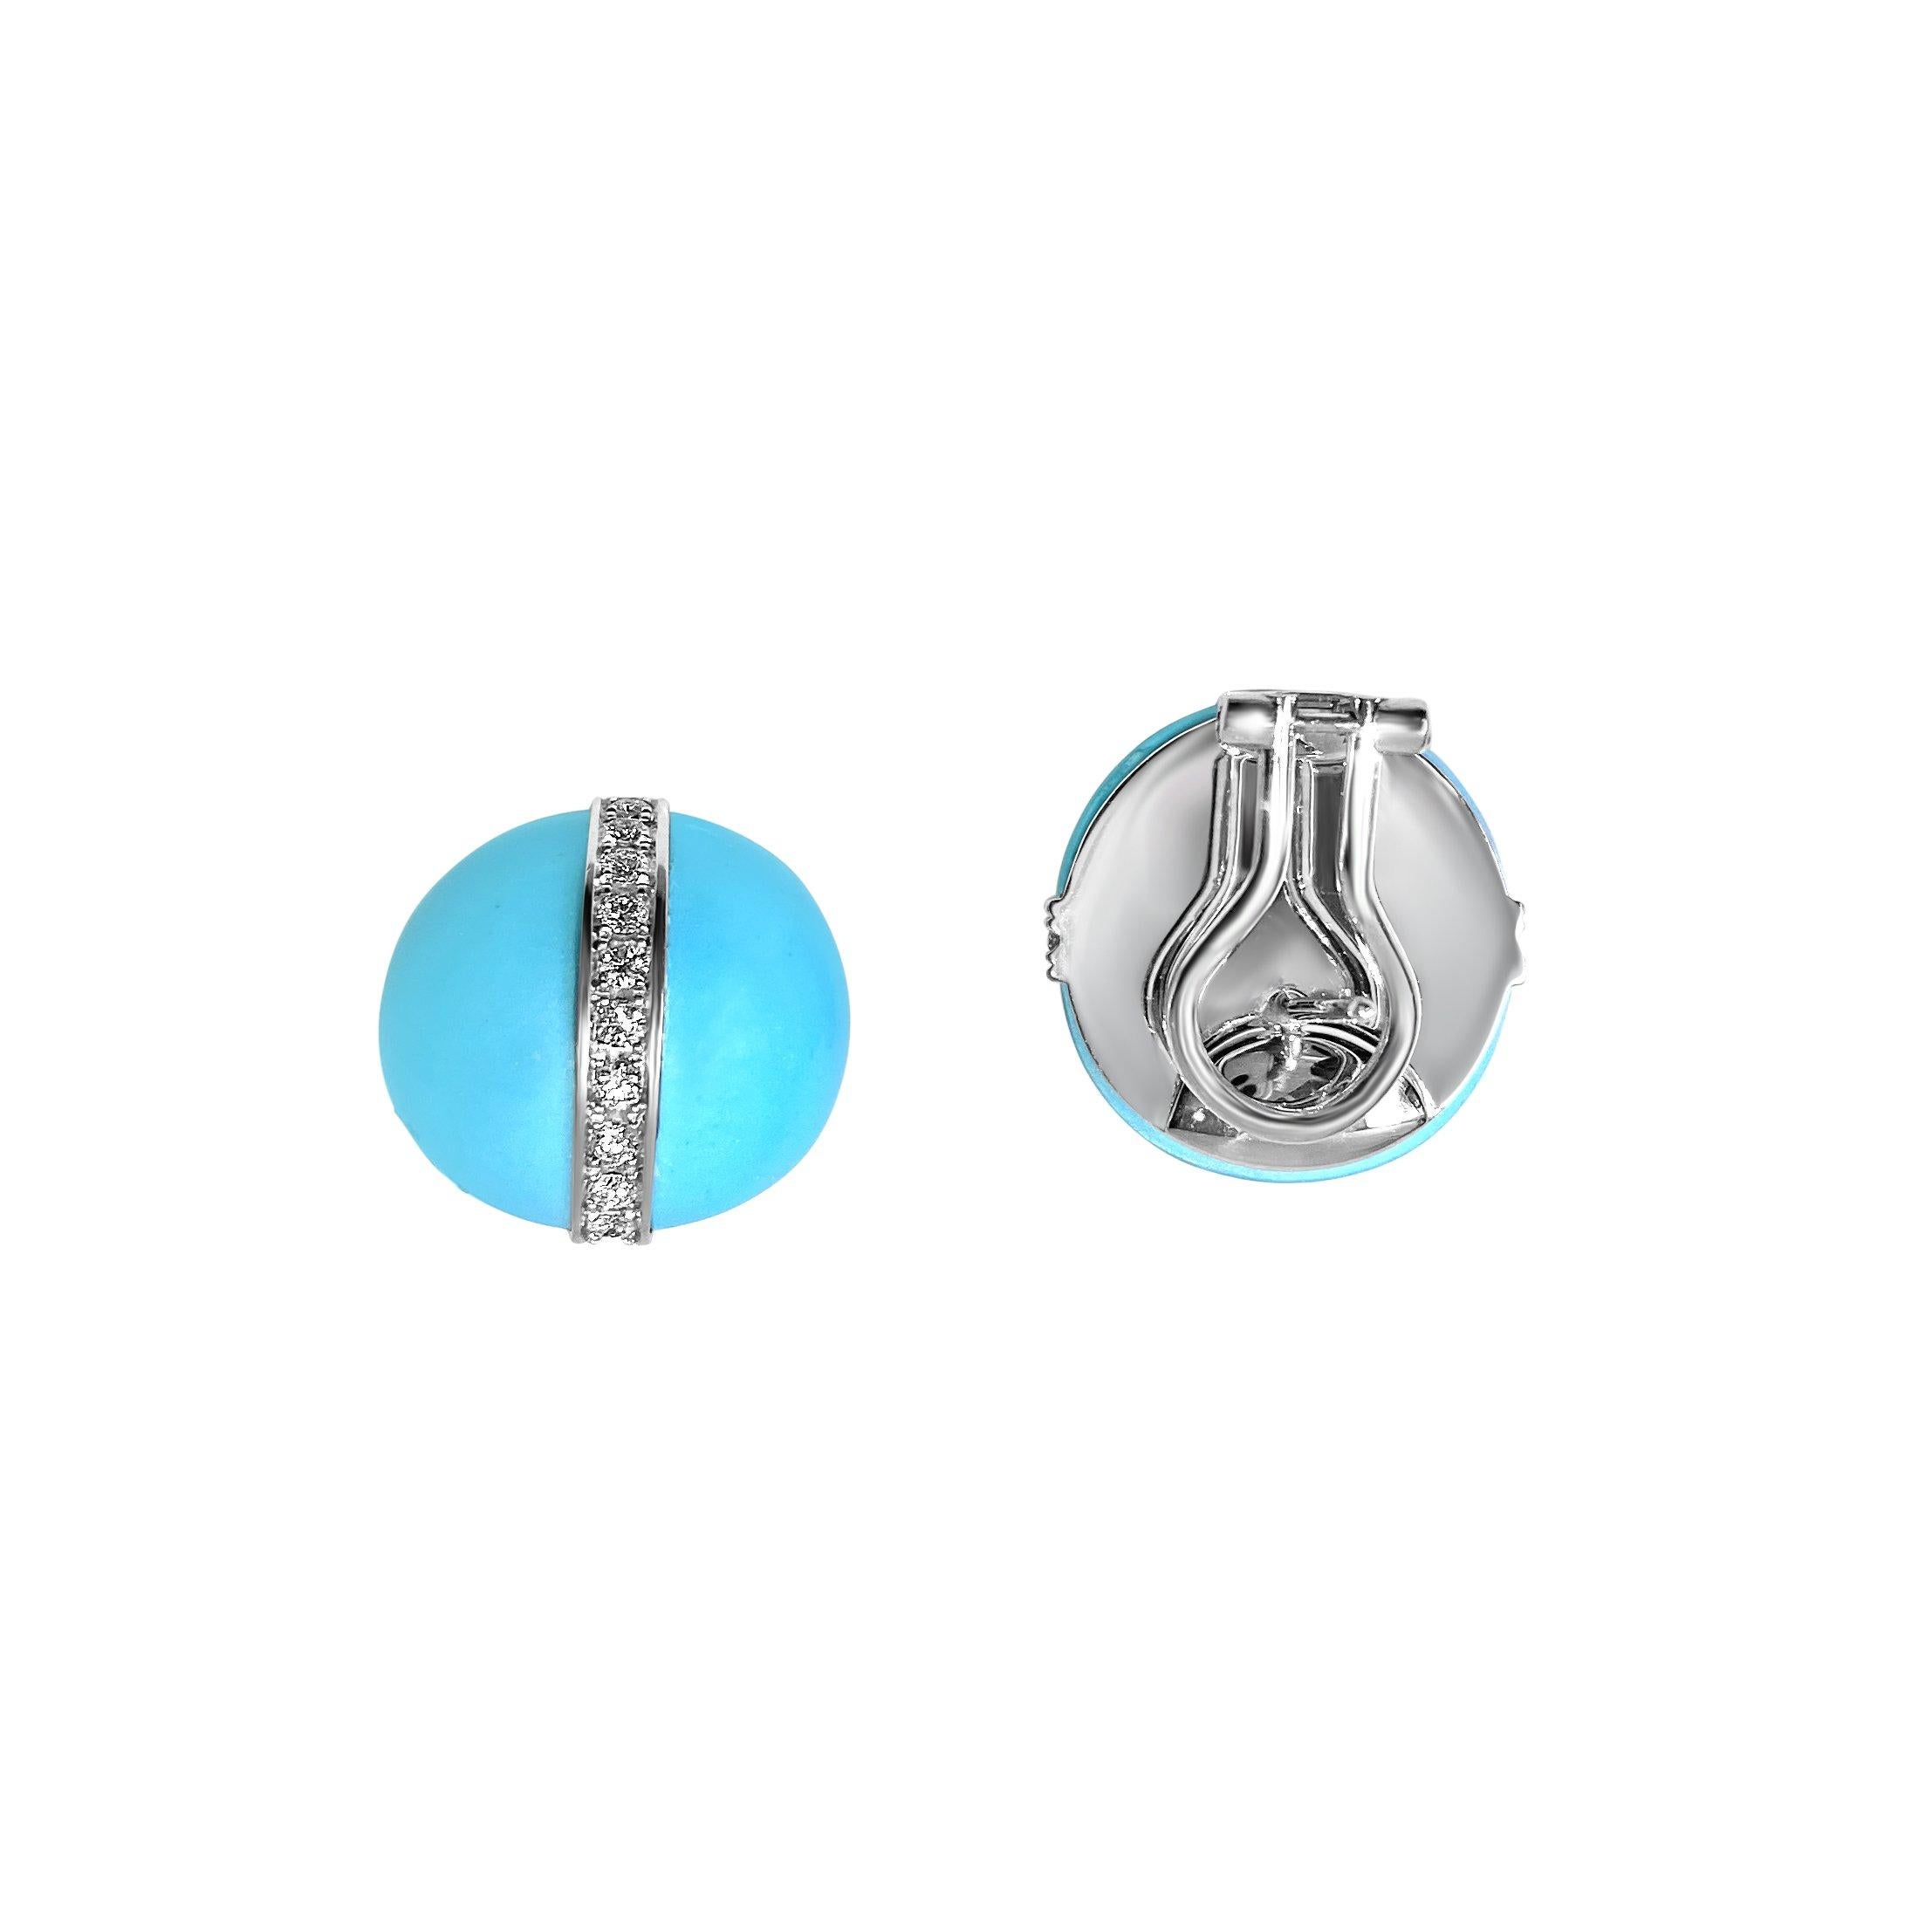 Boucles d'oreilles de la collection Etrusca de Matthias & Claire : Élégantes boucles d'oreilles en turquoise serties en or blanc 18 carats avec un accent en diamant pavé. Dos de levier ultra-sécurisé. Un collier assorti est disponible.